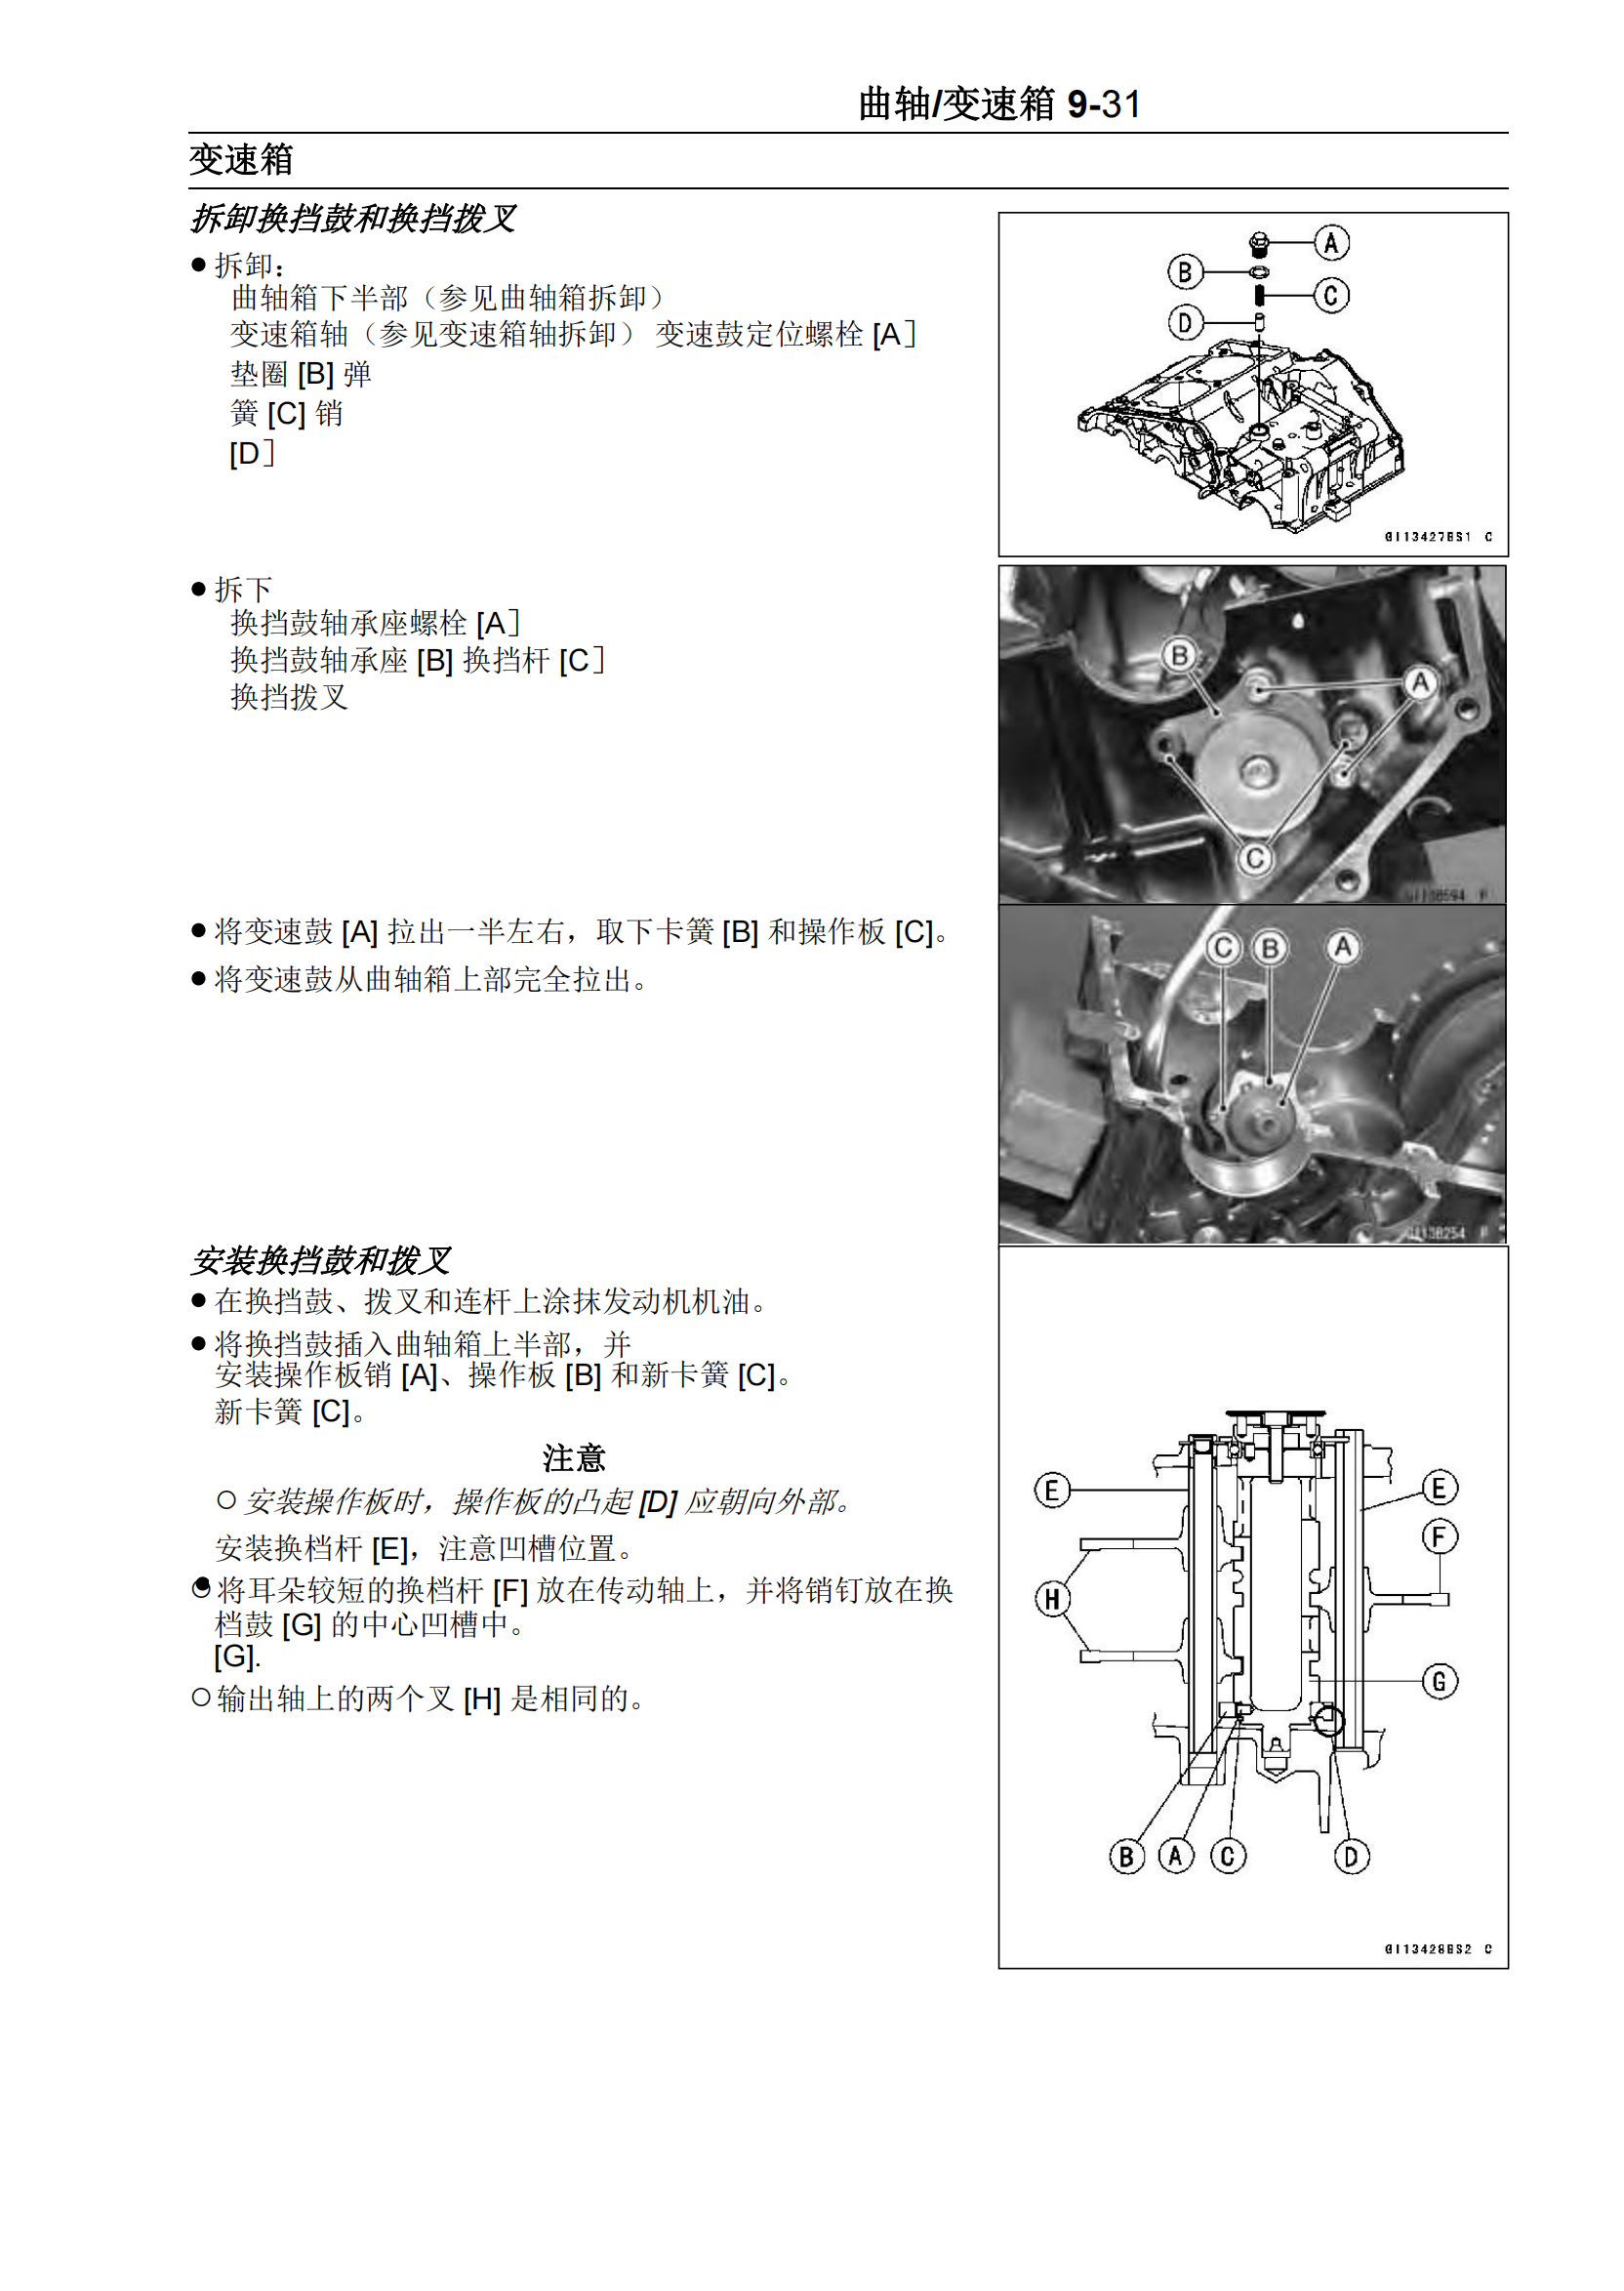 简体中文2008年-2012年川崎小忍者 ninja250r kawasaki 维修手册（电喷）插图4